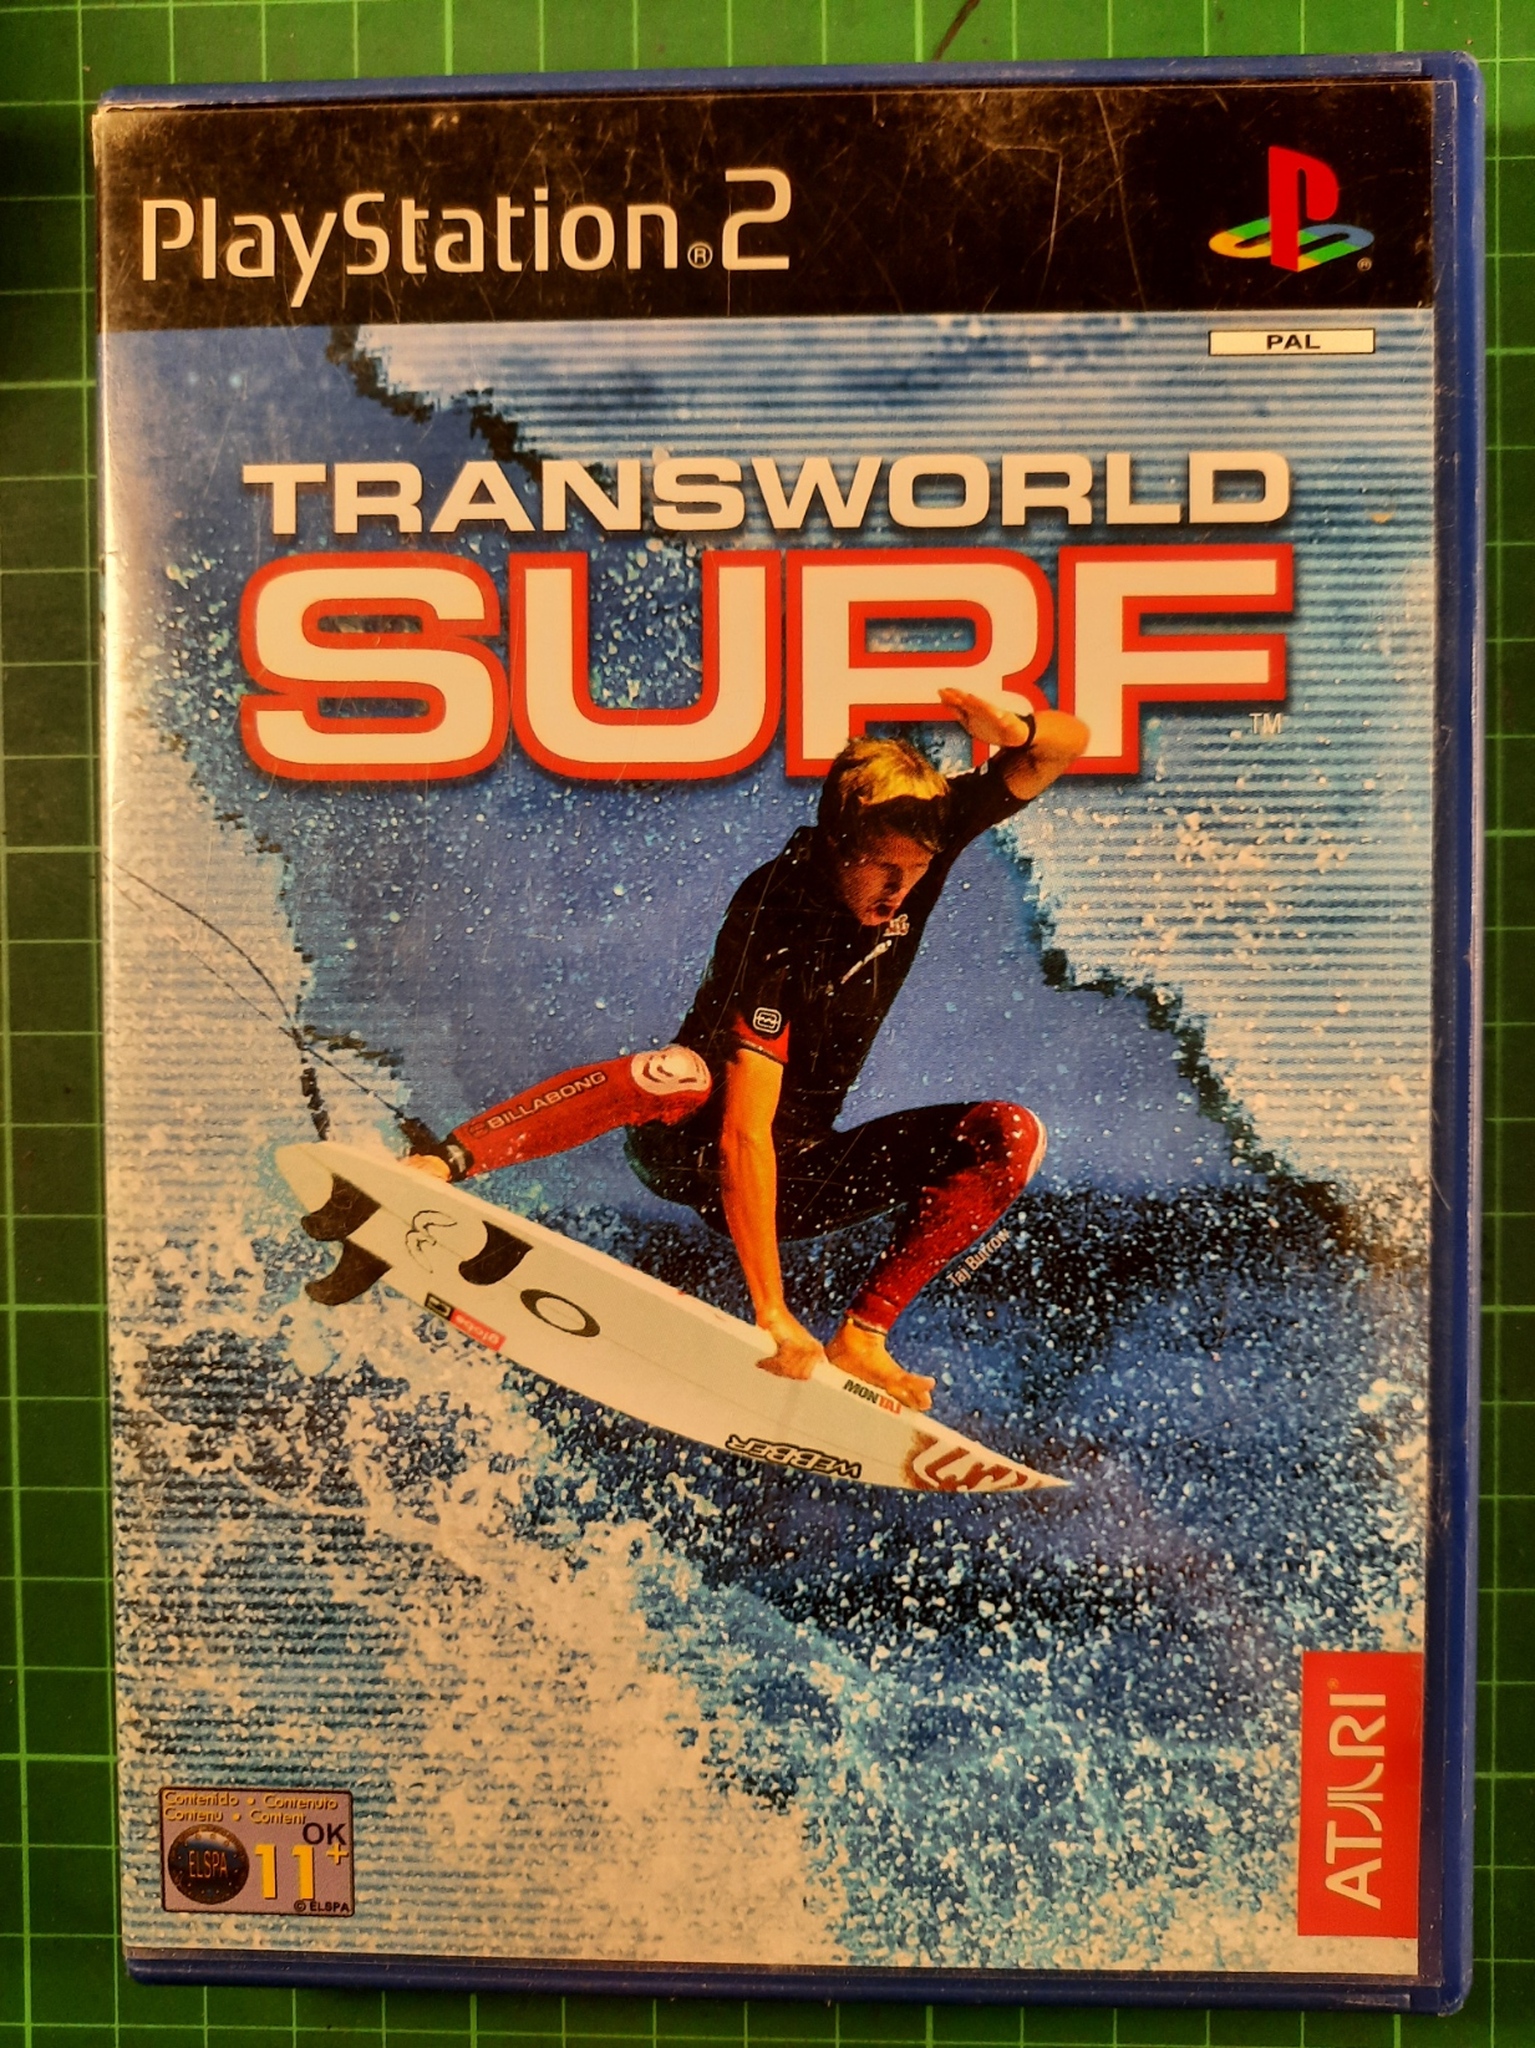 Playstation 2 : Transworld surf